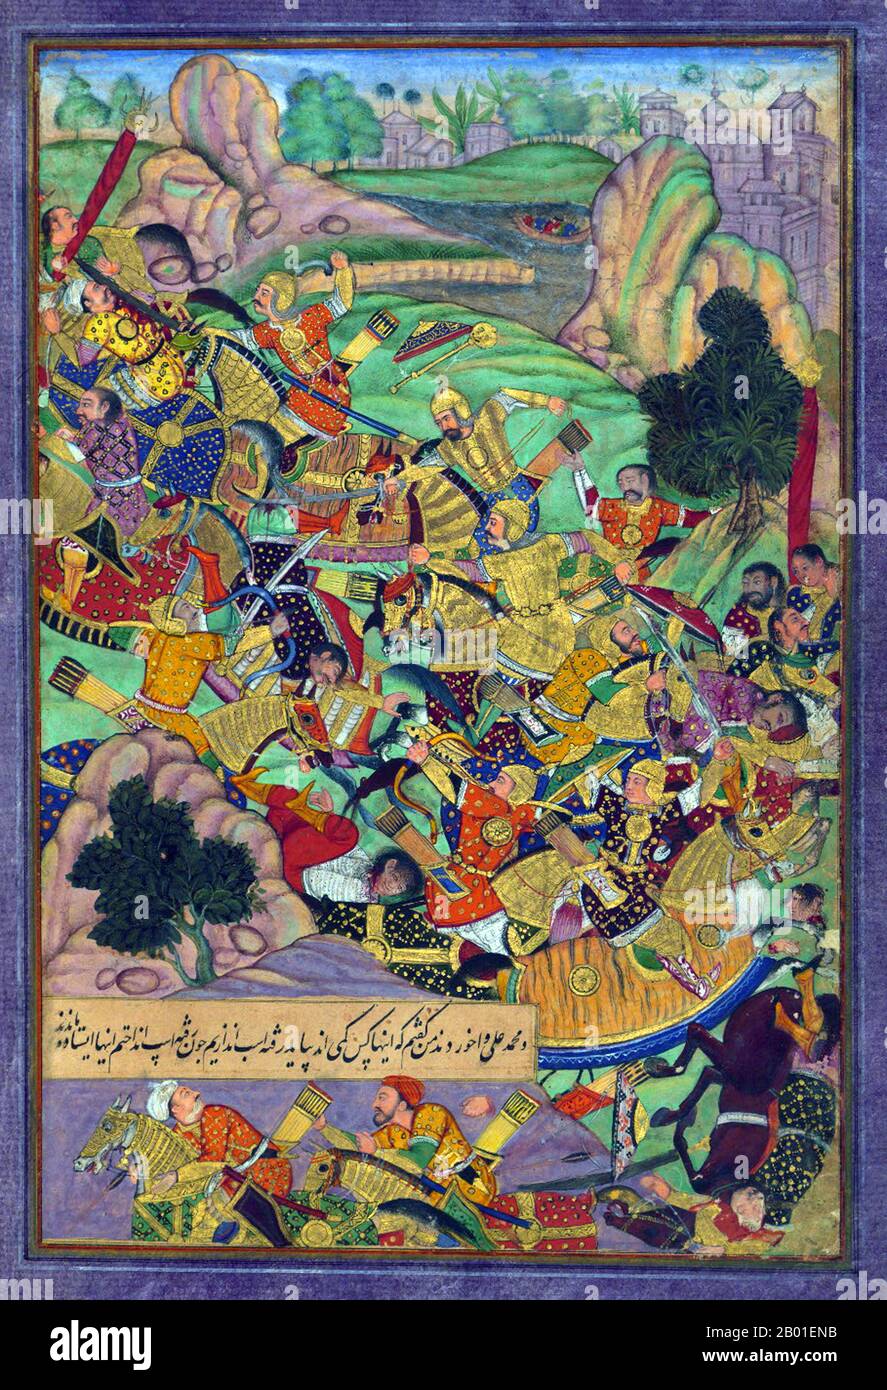 India: Zahir ud-din Muhammad Babur (1483-1531), il primo imperatore Mughal, affronta i suoi nemici. Dipinto in miniatura del Baburnama, 16th ° secolo. Bāburnāma (letteralmente: 'Libro di Babur' o 'lettere di Babur'; altrimenti conosciuto come Tuzk-e Babri) è il nome dato alle memorie di Ẓahīr ud-Dīn Muḥammad Bābu, fondatore dell'Impero Mughal e bisnonno di Timur. Si tratta di un'opera autobiografica, originariamente scritta in lingua Chagatai, nota a Babur come 'Turki' (che significa Turkic), la lingua parlata degli Andijan-Timuridi. Foto Stock